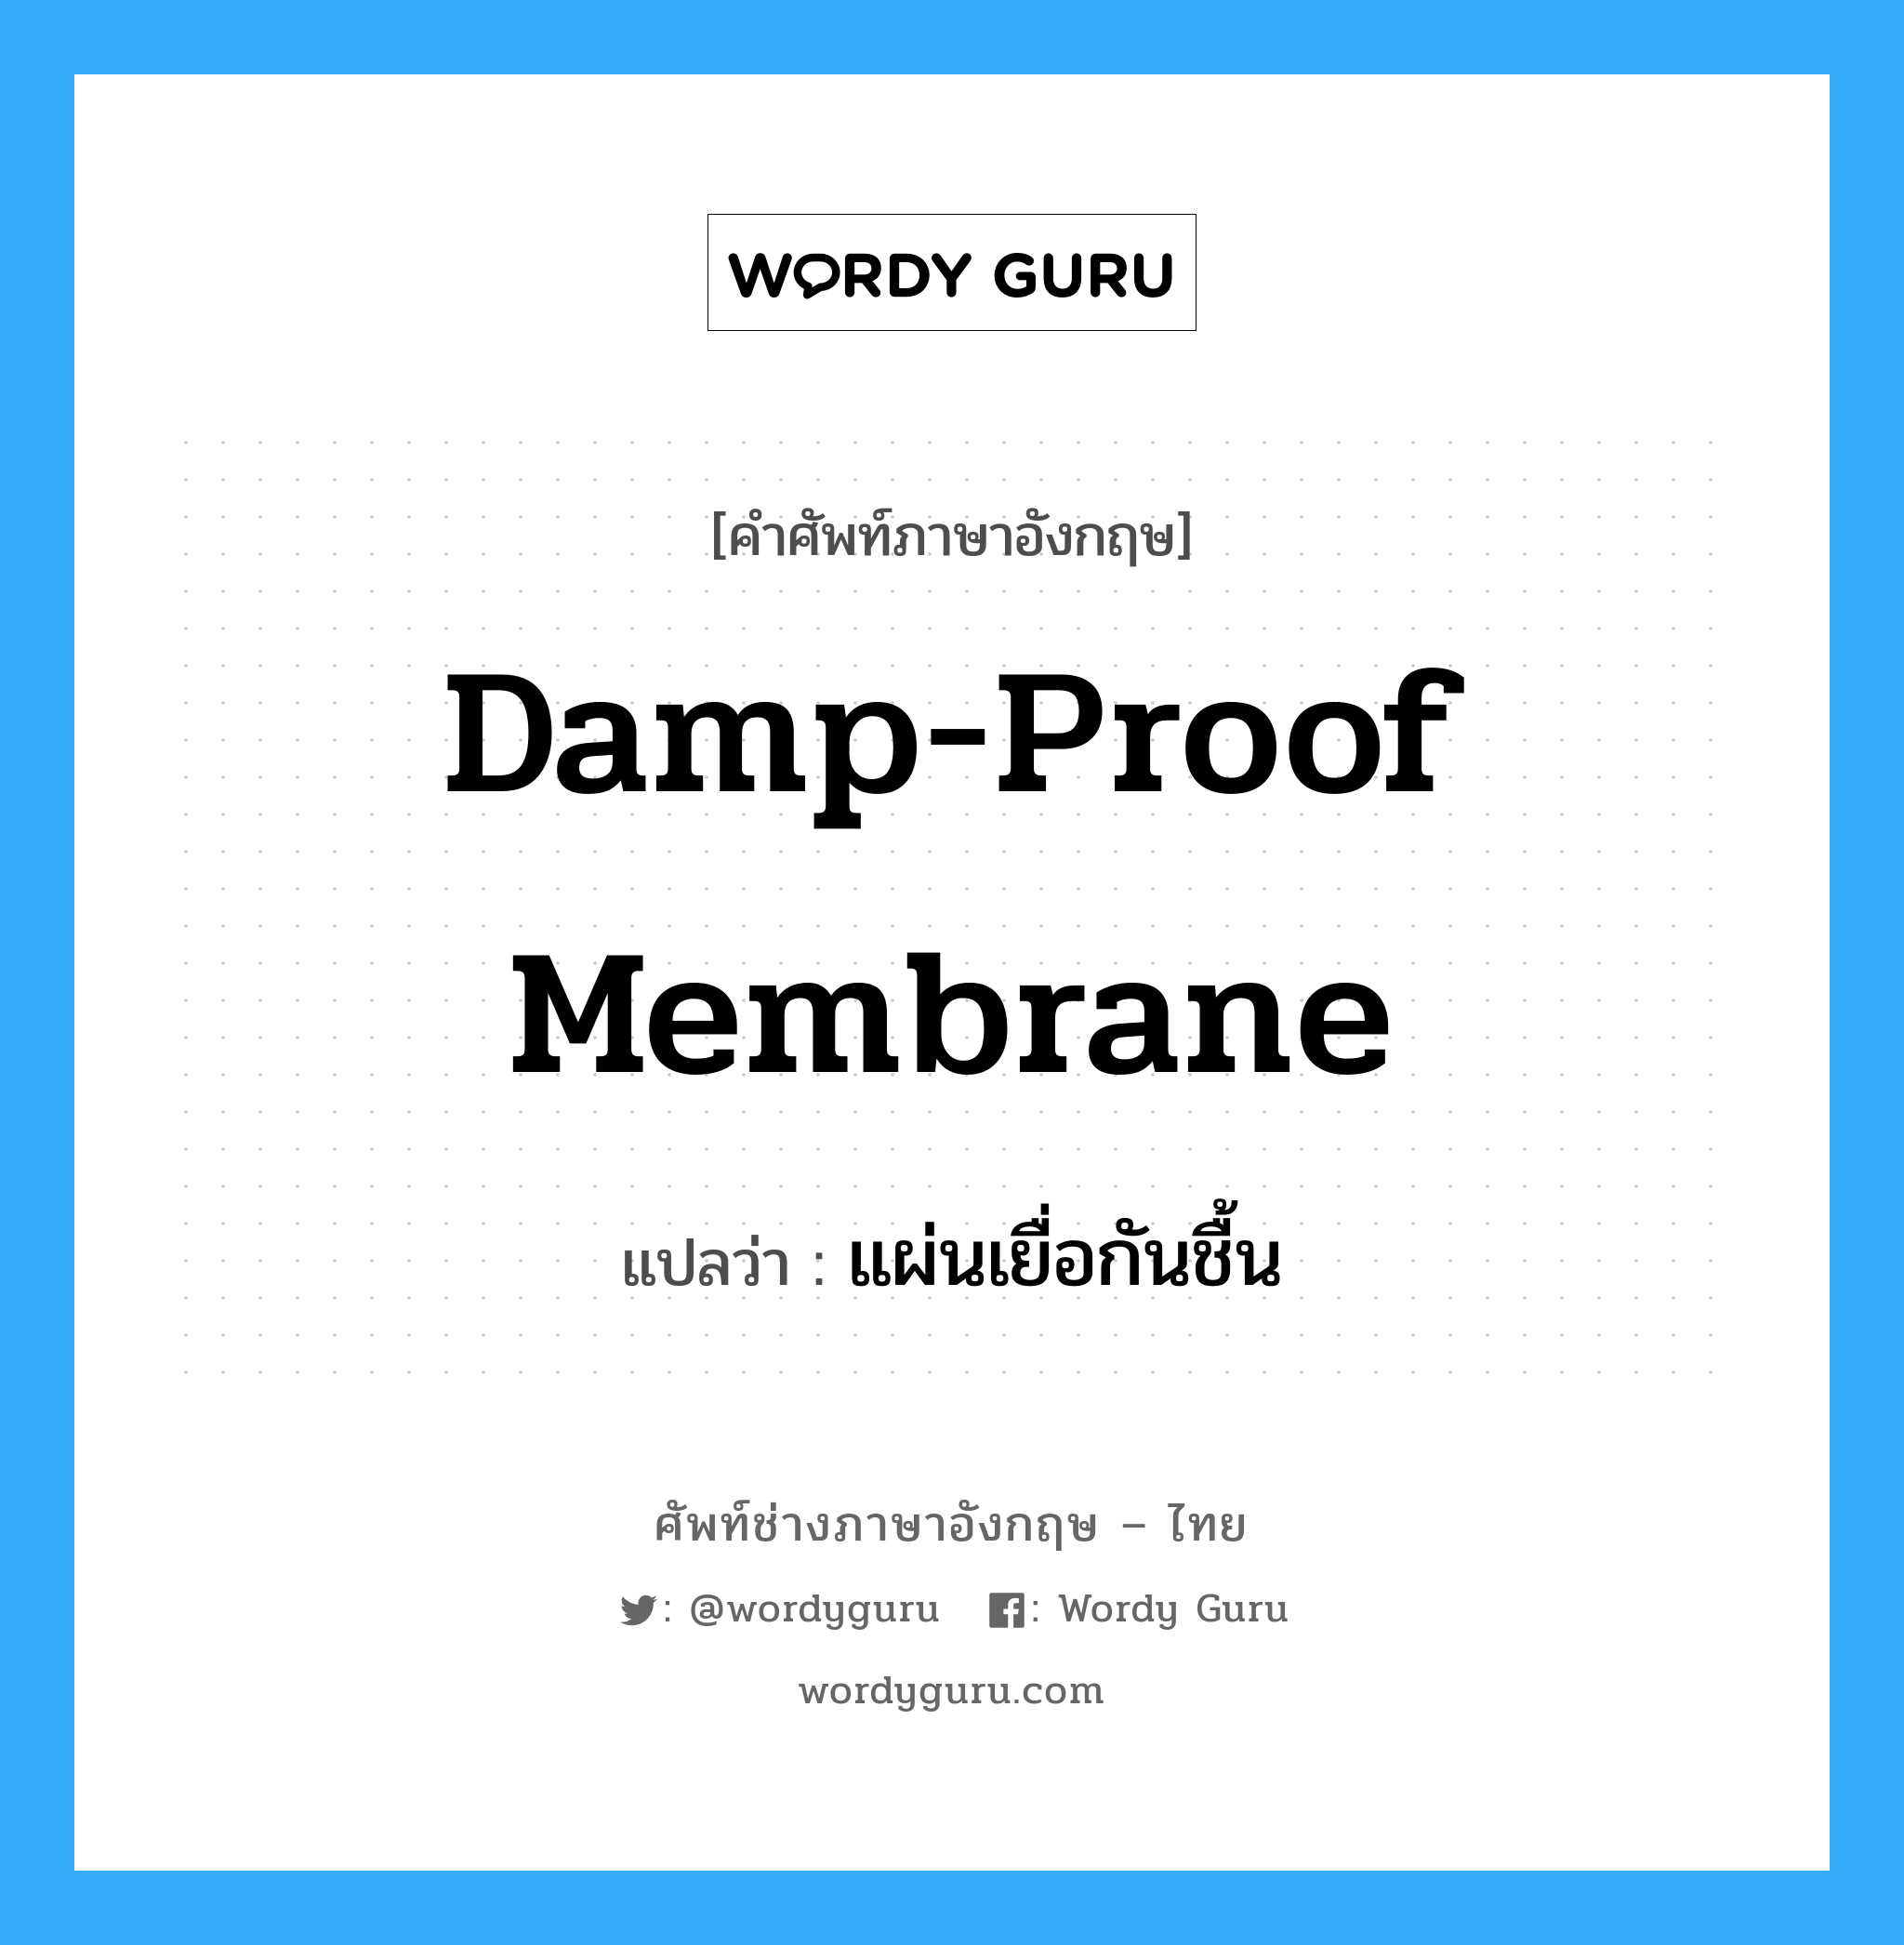 damp-proof membrane แปลว่า?, คำศัพท์ช่างภาษาอังกฤษ - ไทย damp-proof membrane คำศัพท์ภาษาอังกฤษ damp-proof membrane แปลว่า แผ่นเยื่อกันชื้น